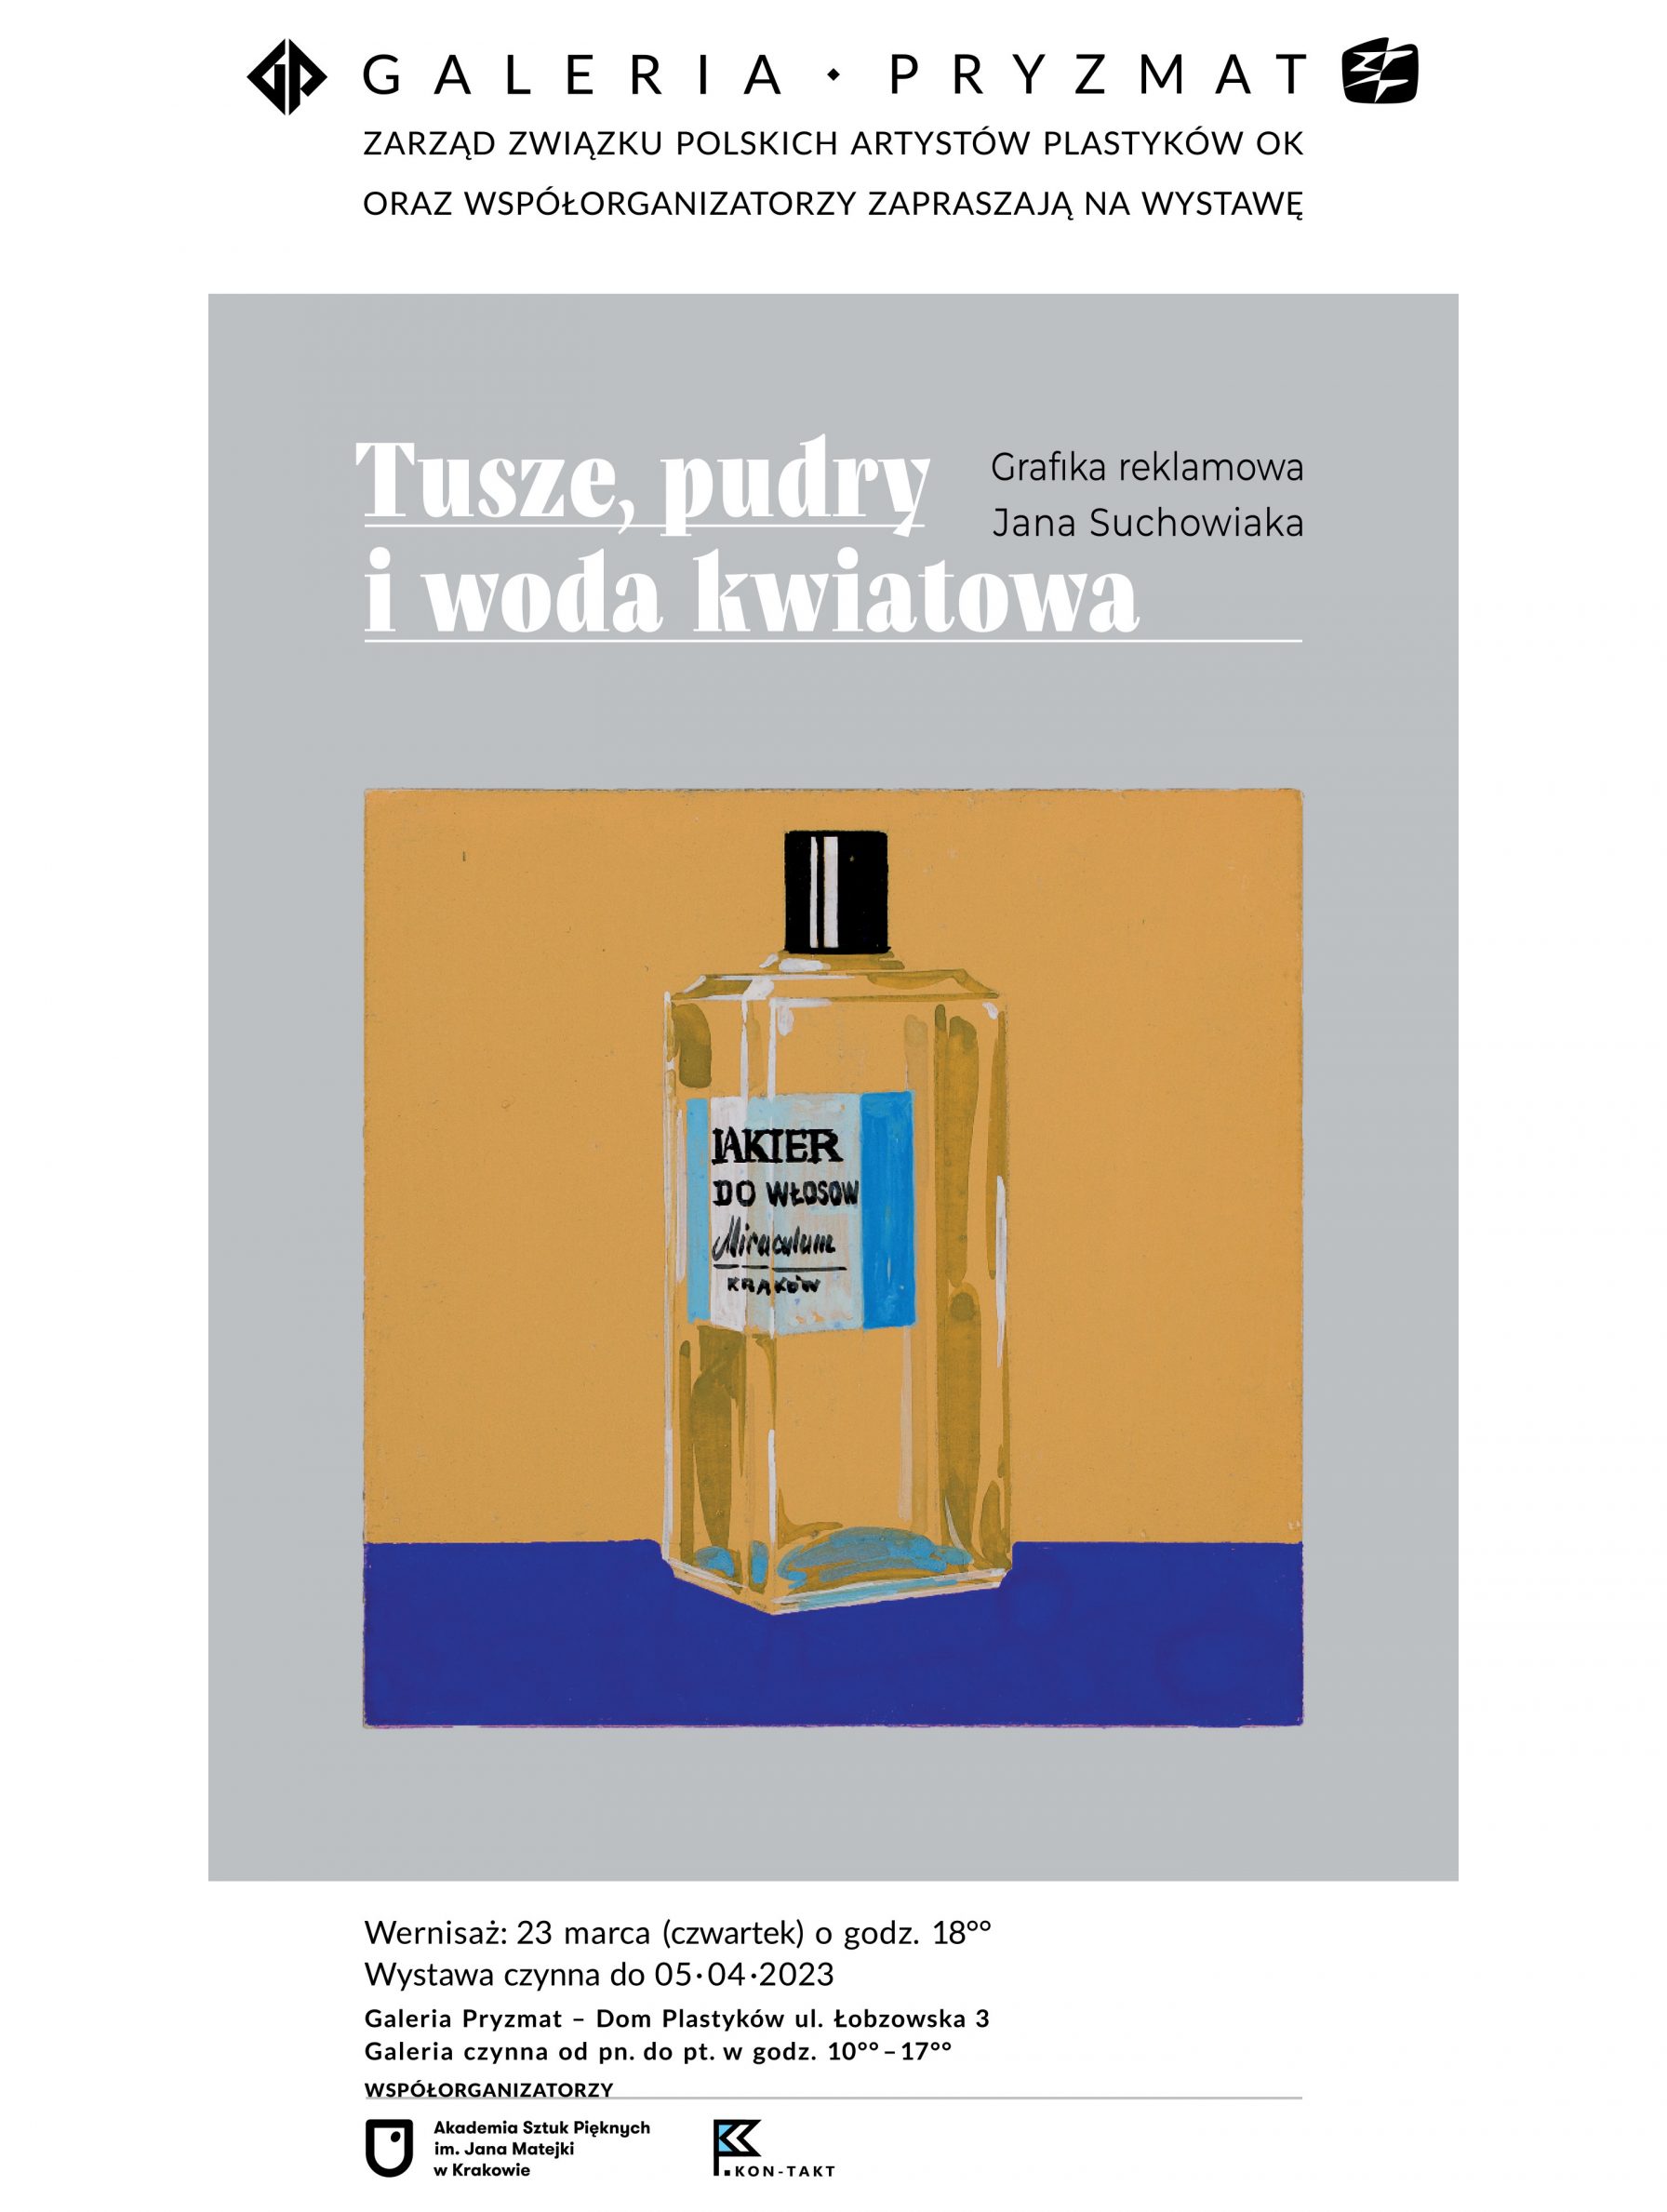 „Tusze, pudry i wody kwiatowe. Grafika reklamowa Jana Suchowiaka” – wernisaż wystawy